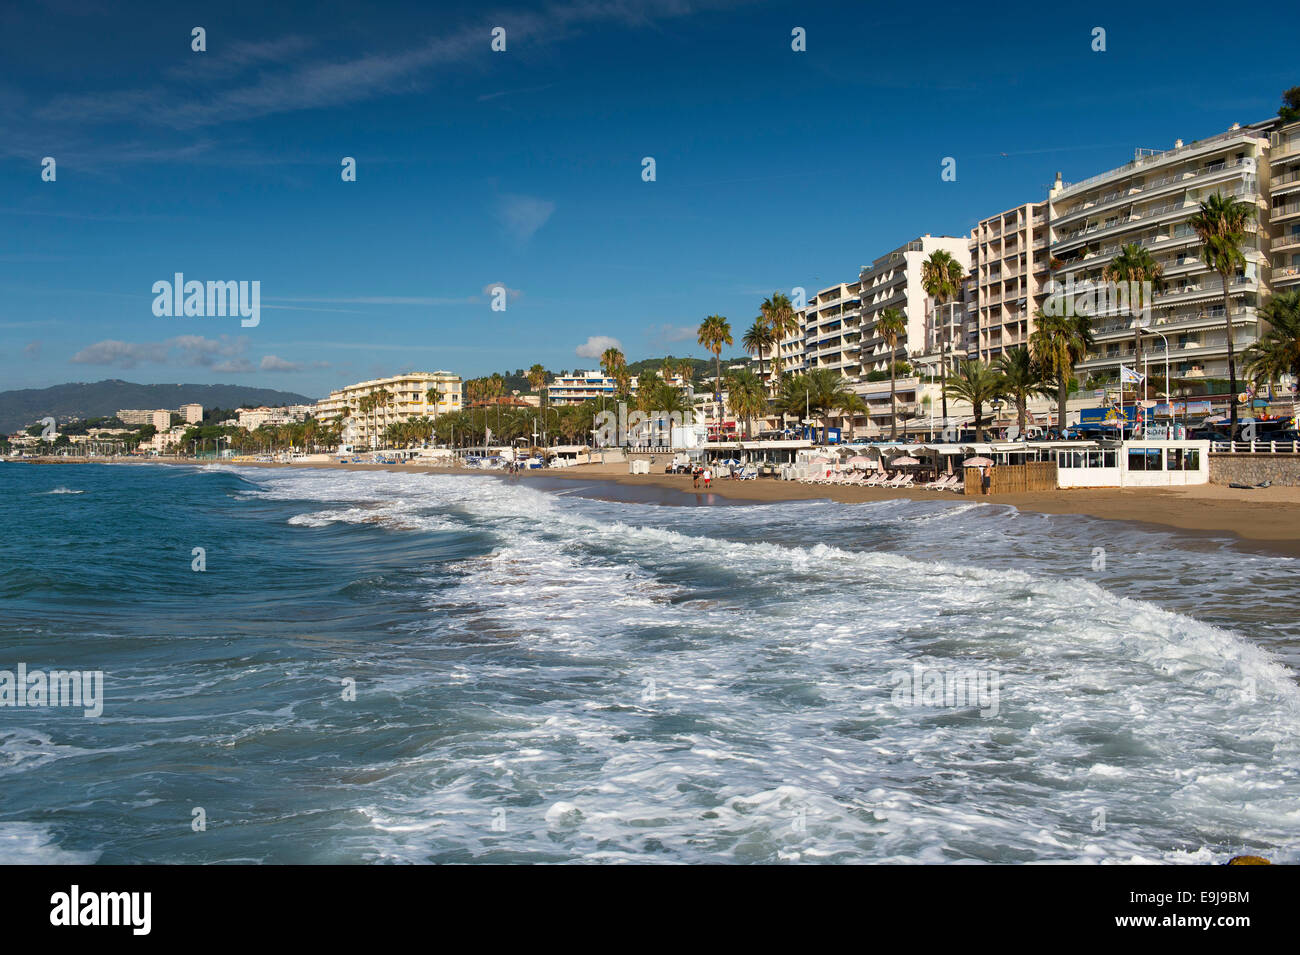 La spiaggia principale di Cannes, nel sud della Francia, off la Croisette road. Foto Stock